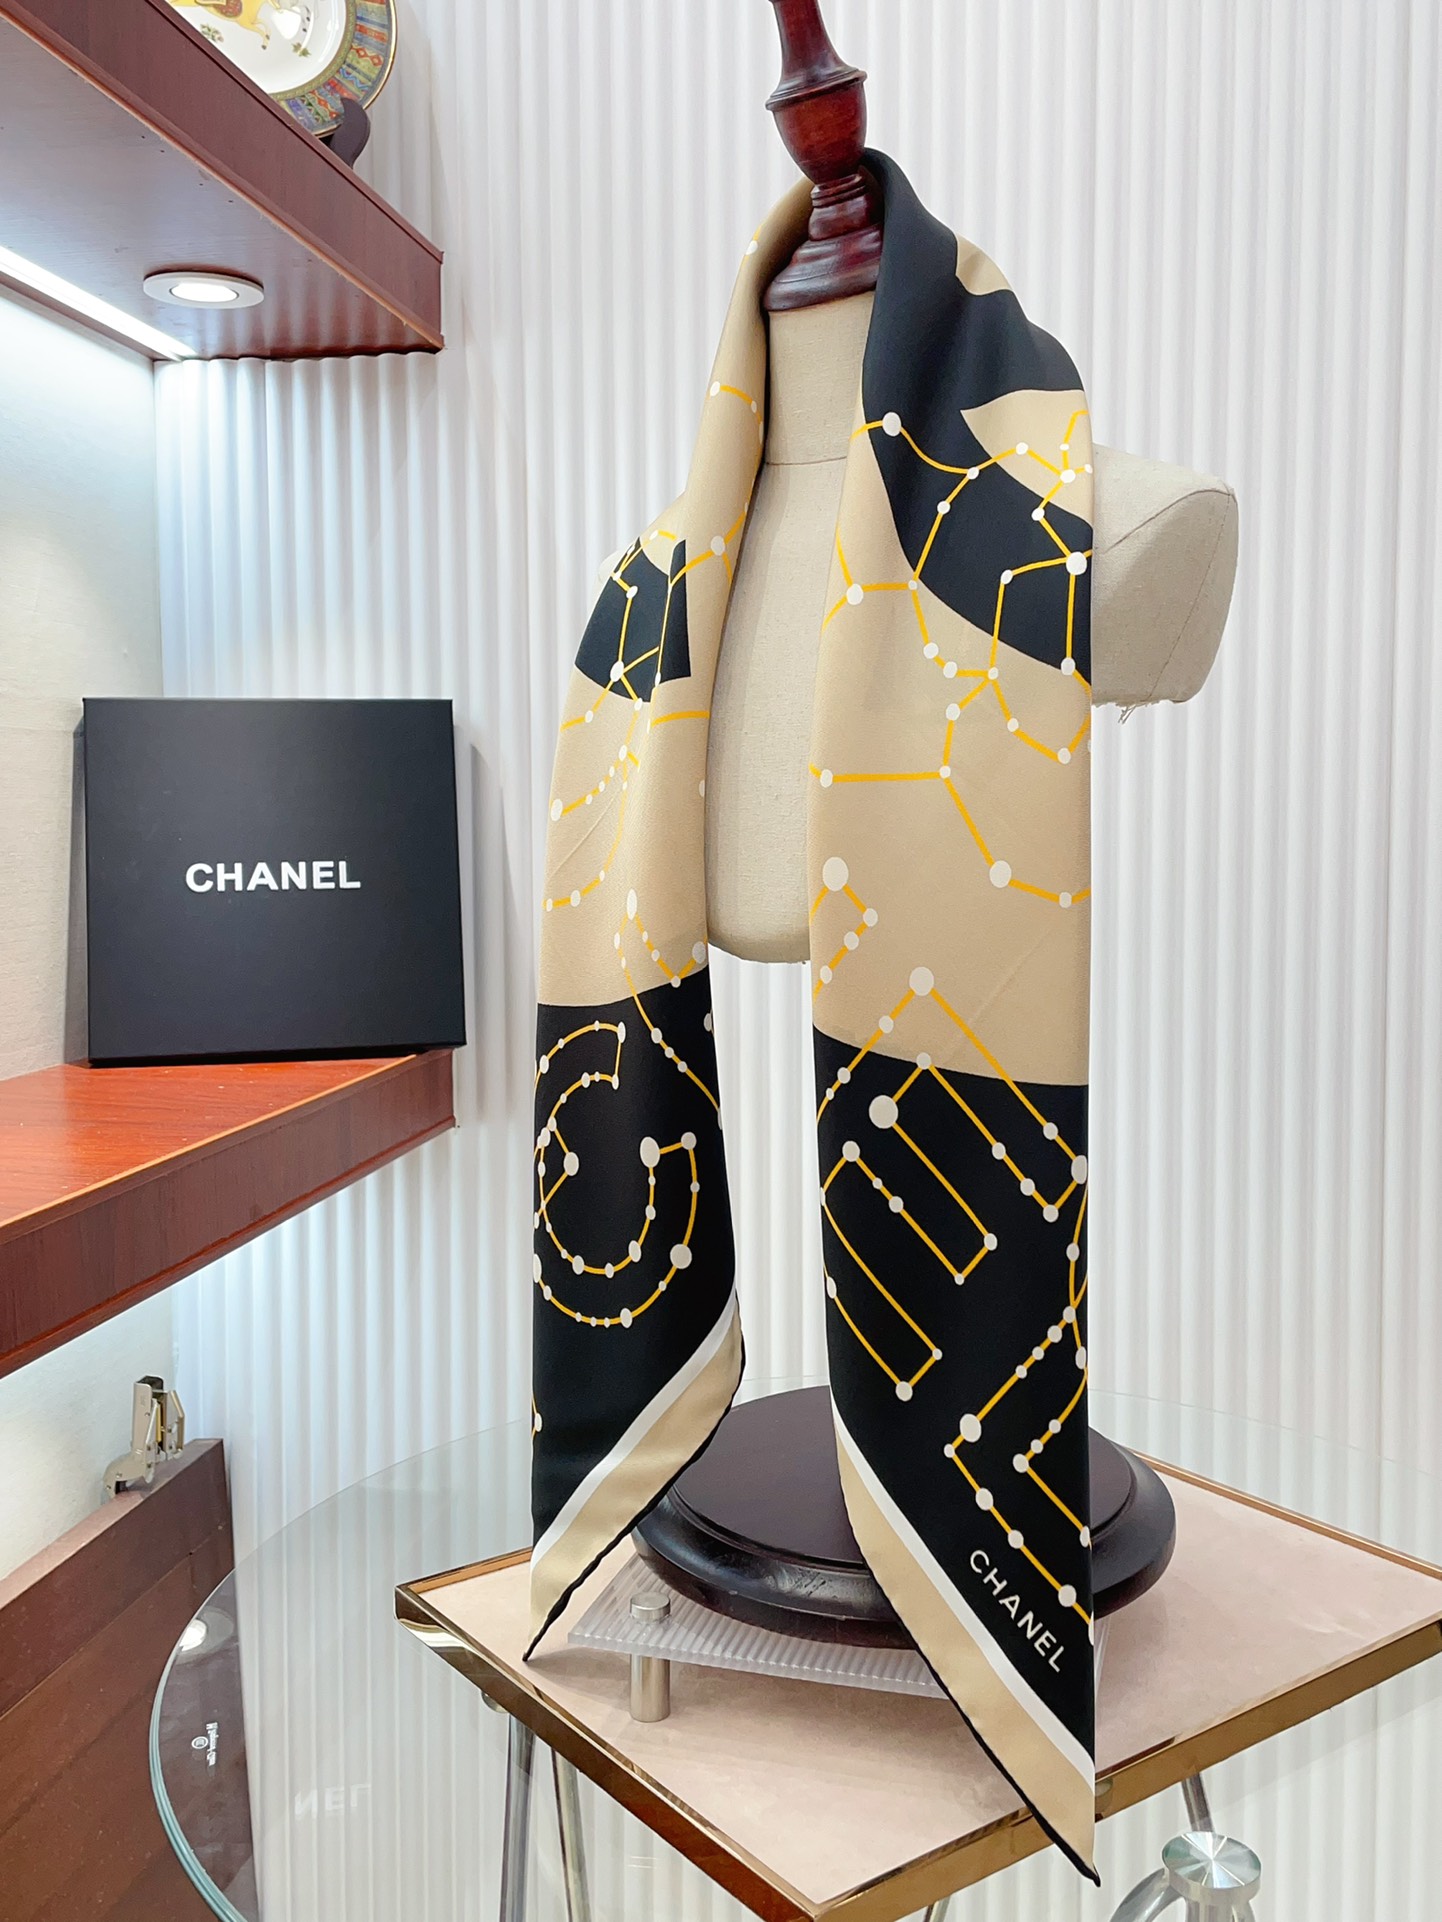 シャネルスカーフ激安通販 シルク 人気定番 美しい ロゴマーク シンプル ファッション レディース ブラウン_6